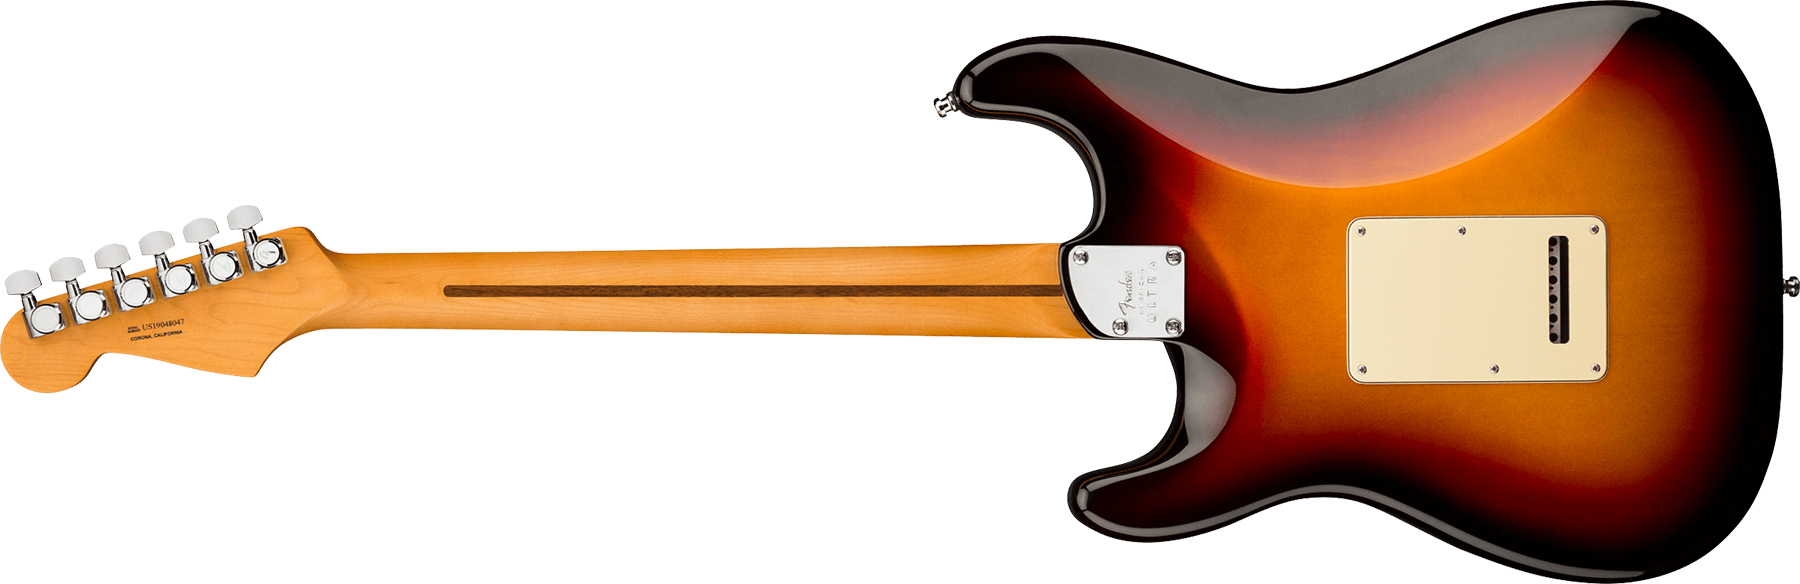 Fender Strat American Ultra 2019 Usa Rw - Ultraburst - Elektrische gitaar in Str-vorm - Variation 1